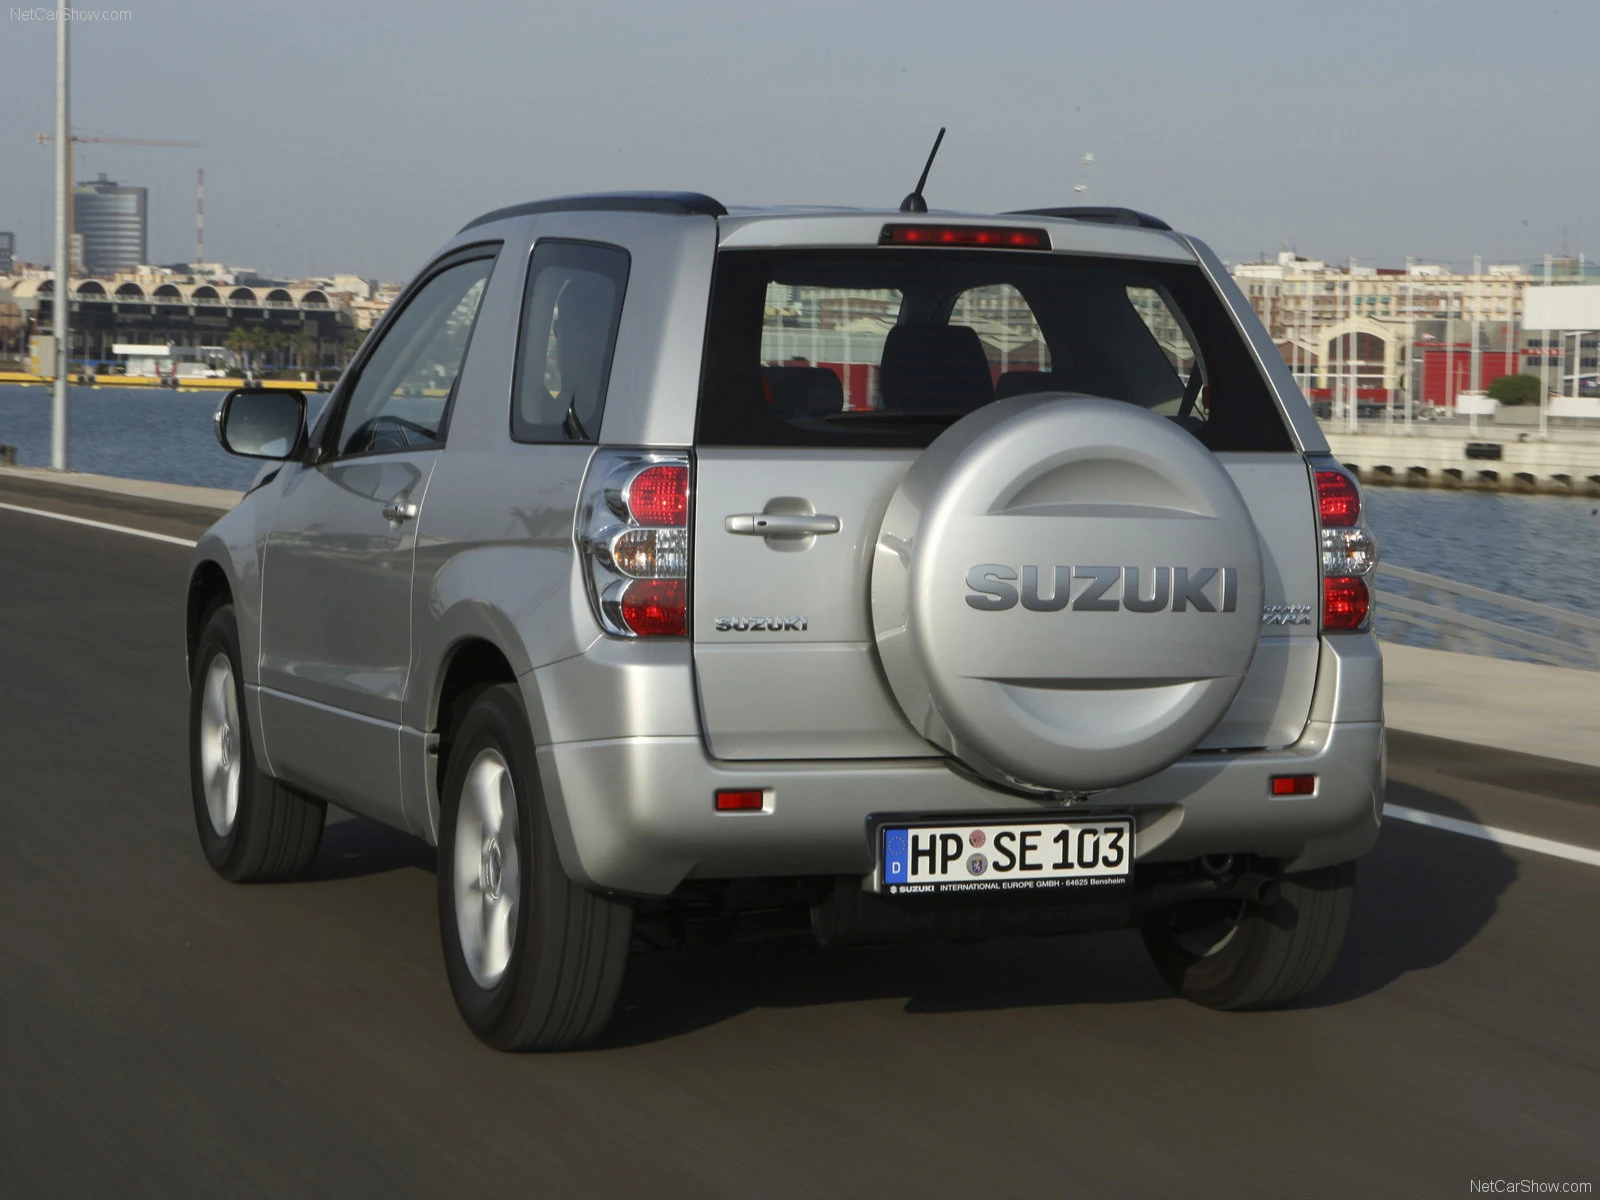 Hình ảnh xe ô tô Suzuki Grand Vitara 3-door 2009 & nội ngoại thất